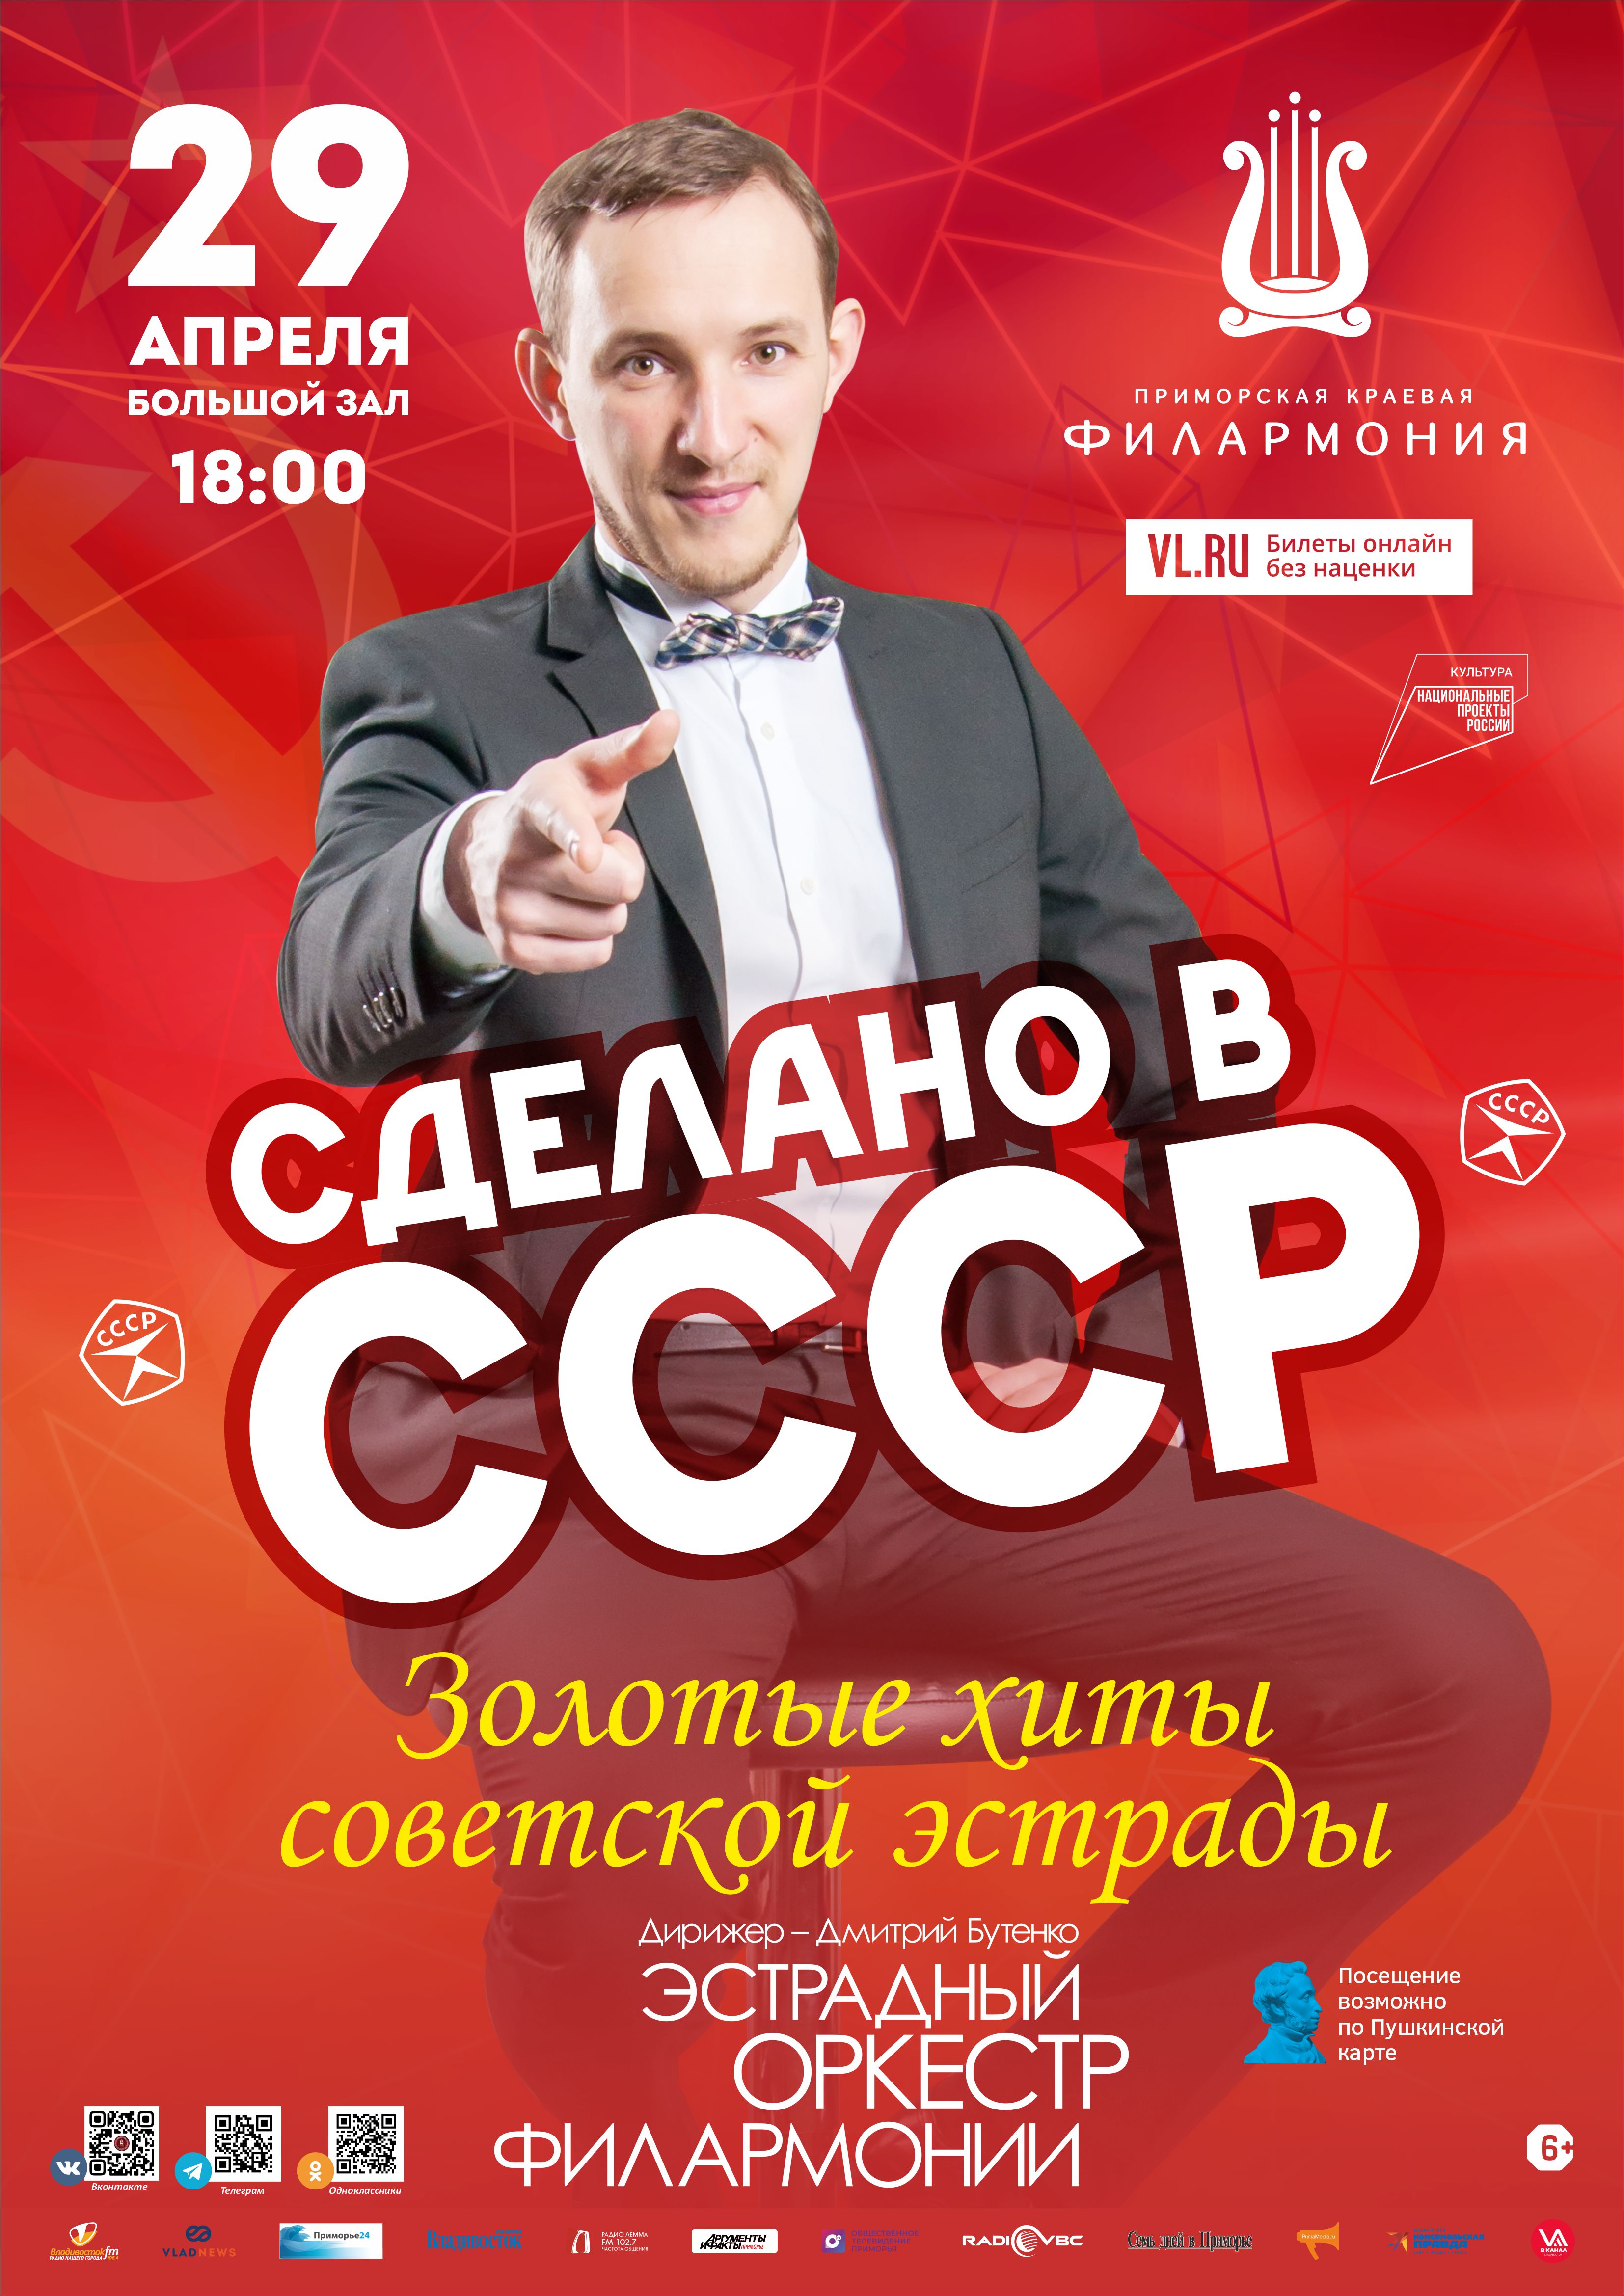 29 апреля Концертная программа «Сделано в СССР» Эстрадный оркестр Приморской краевой филармонии